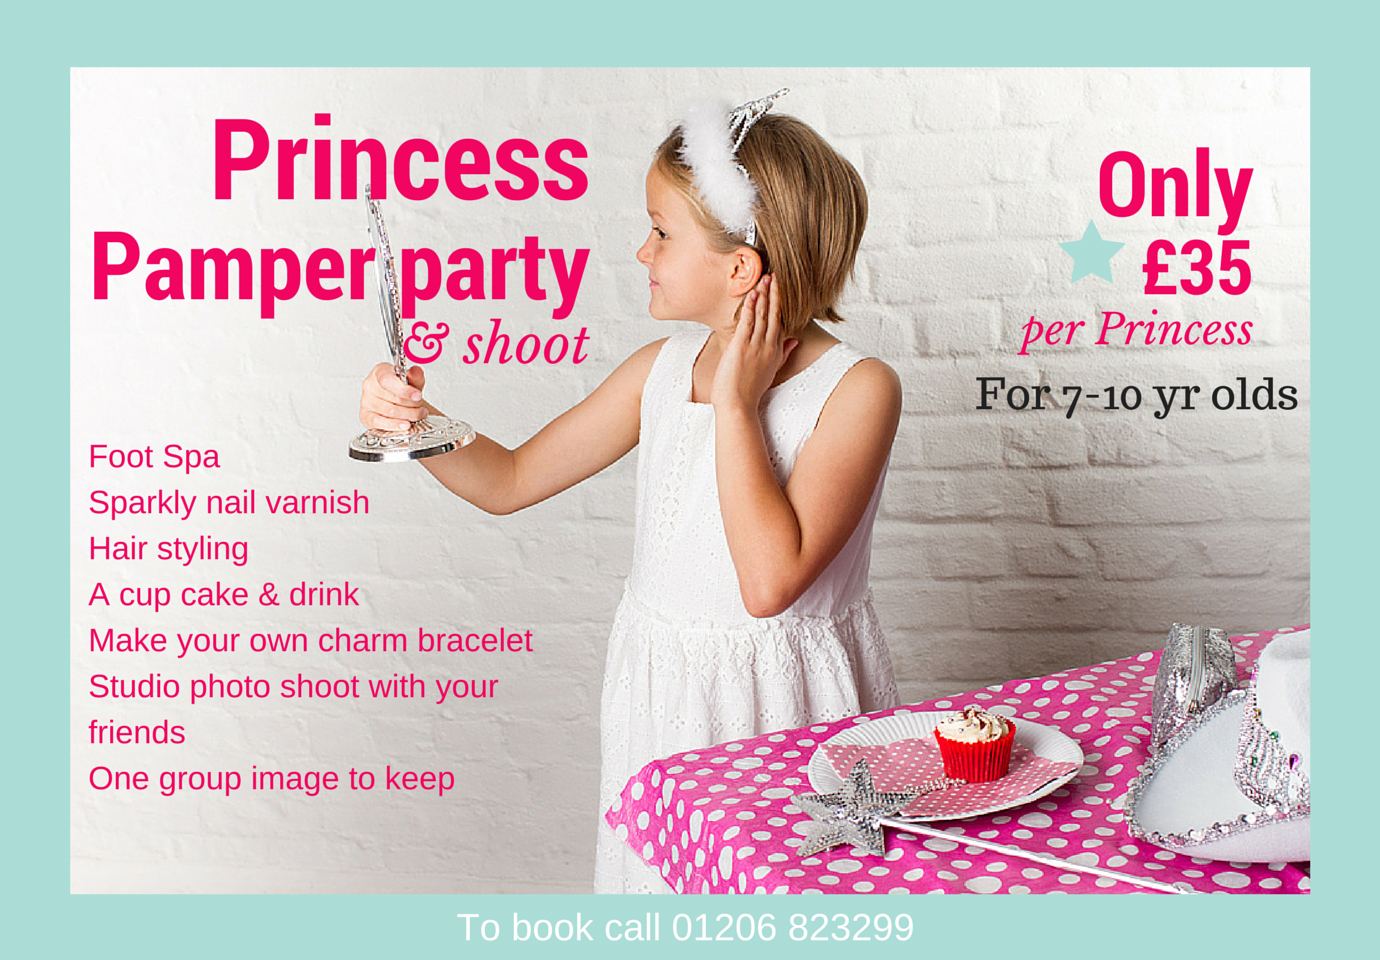 PrincessPamper party & shoot